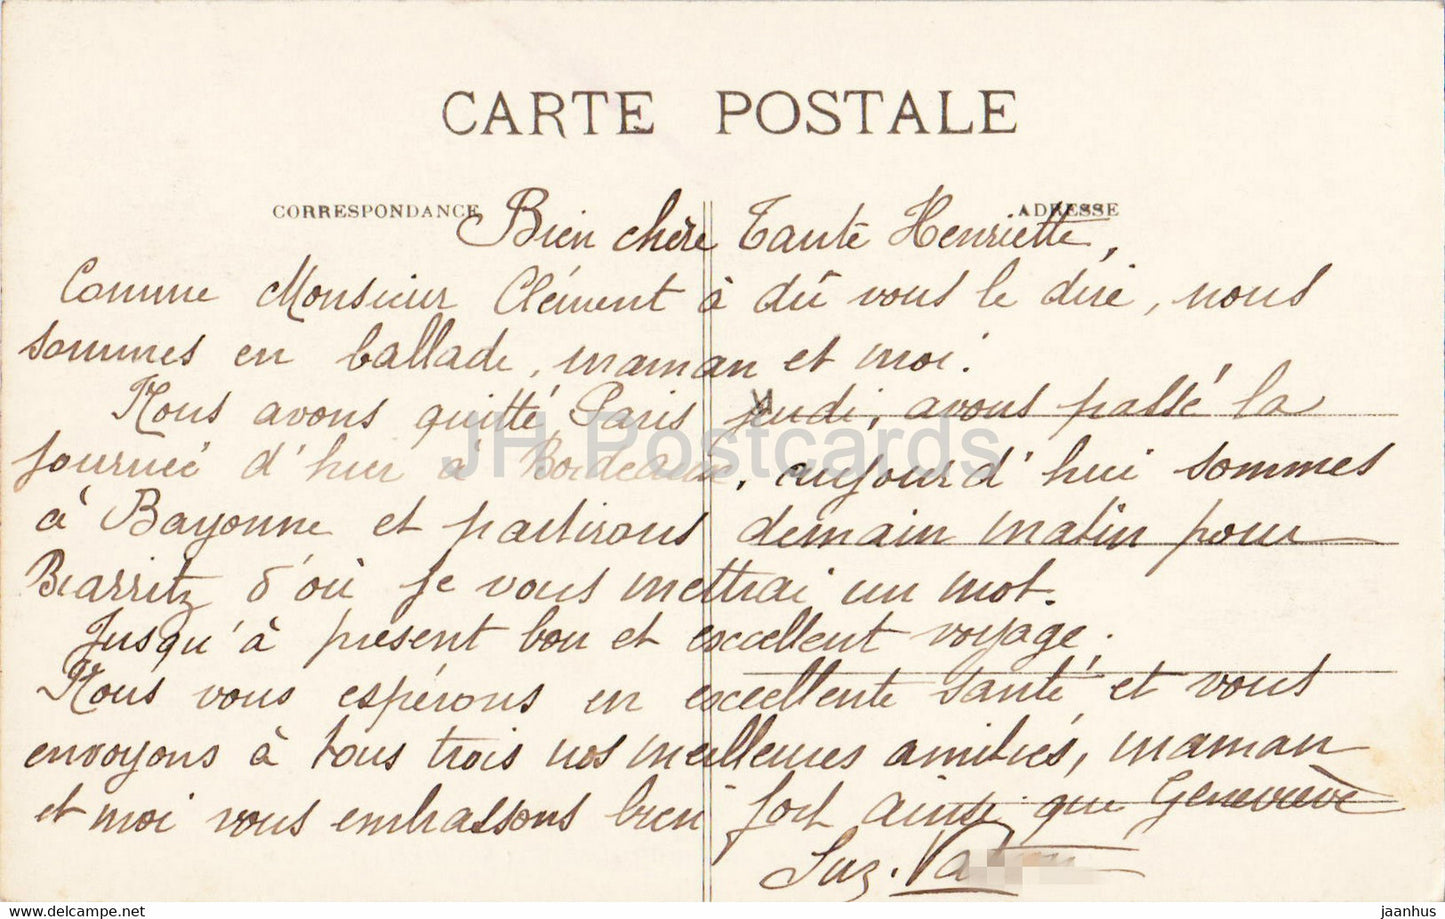 Bayonne - La Place du Reduit et le Pont Saint Esprit - pont - 85 - carte postale ancienne - France - occasion